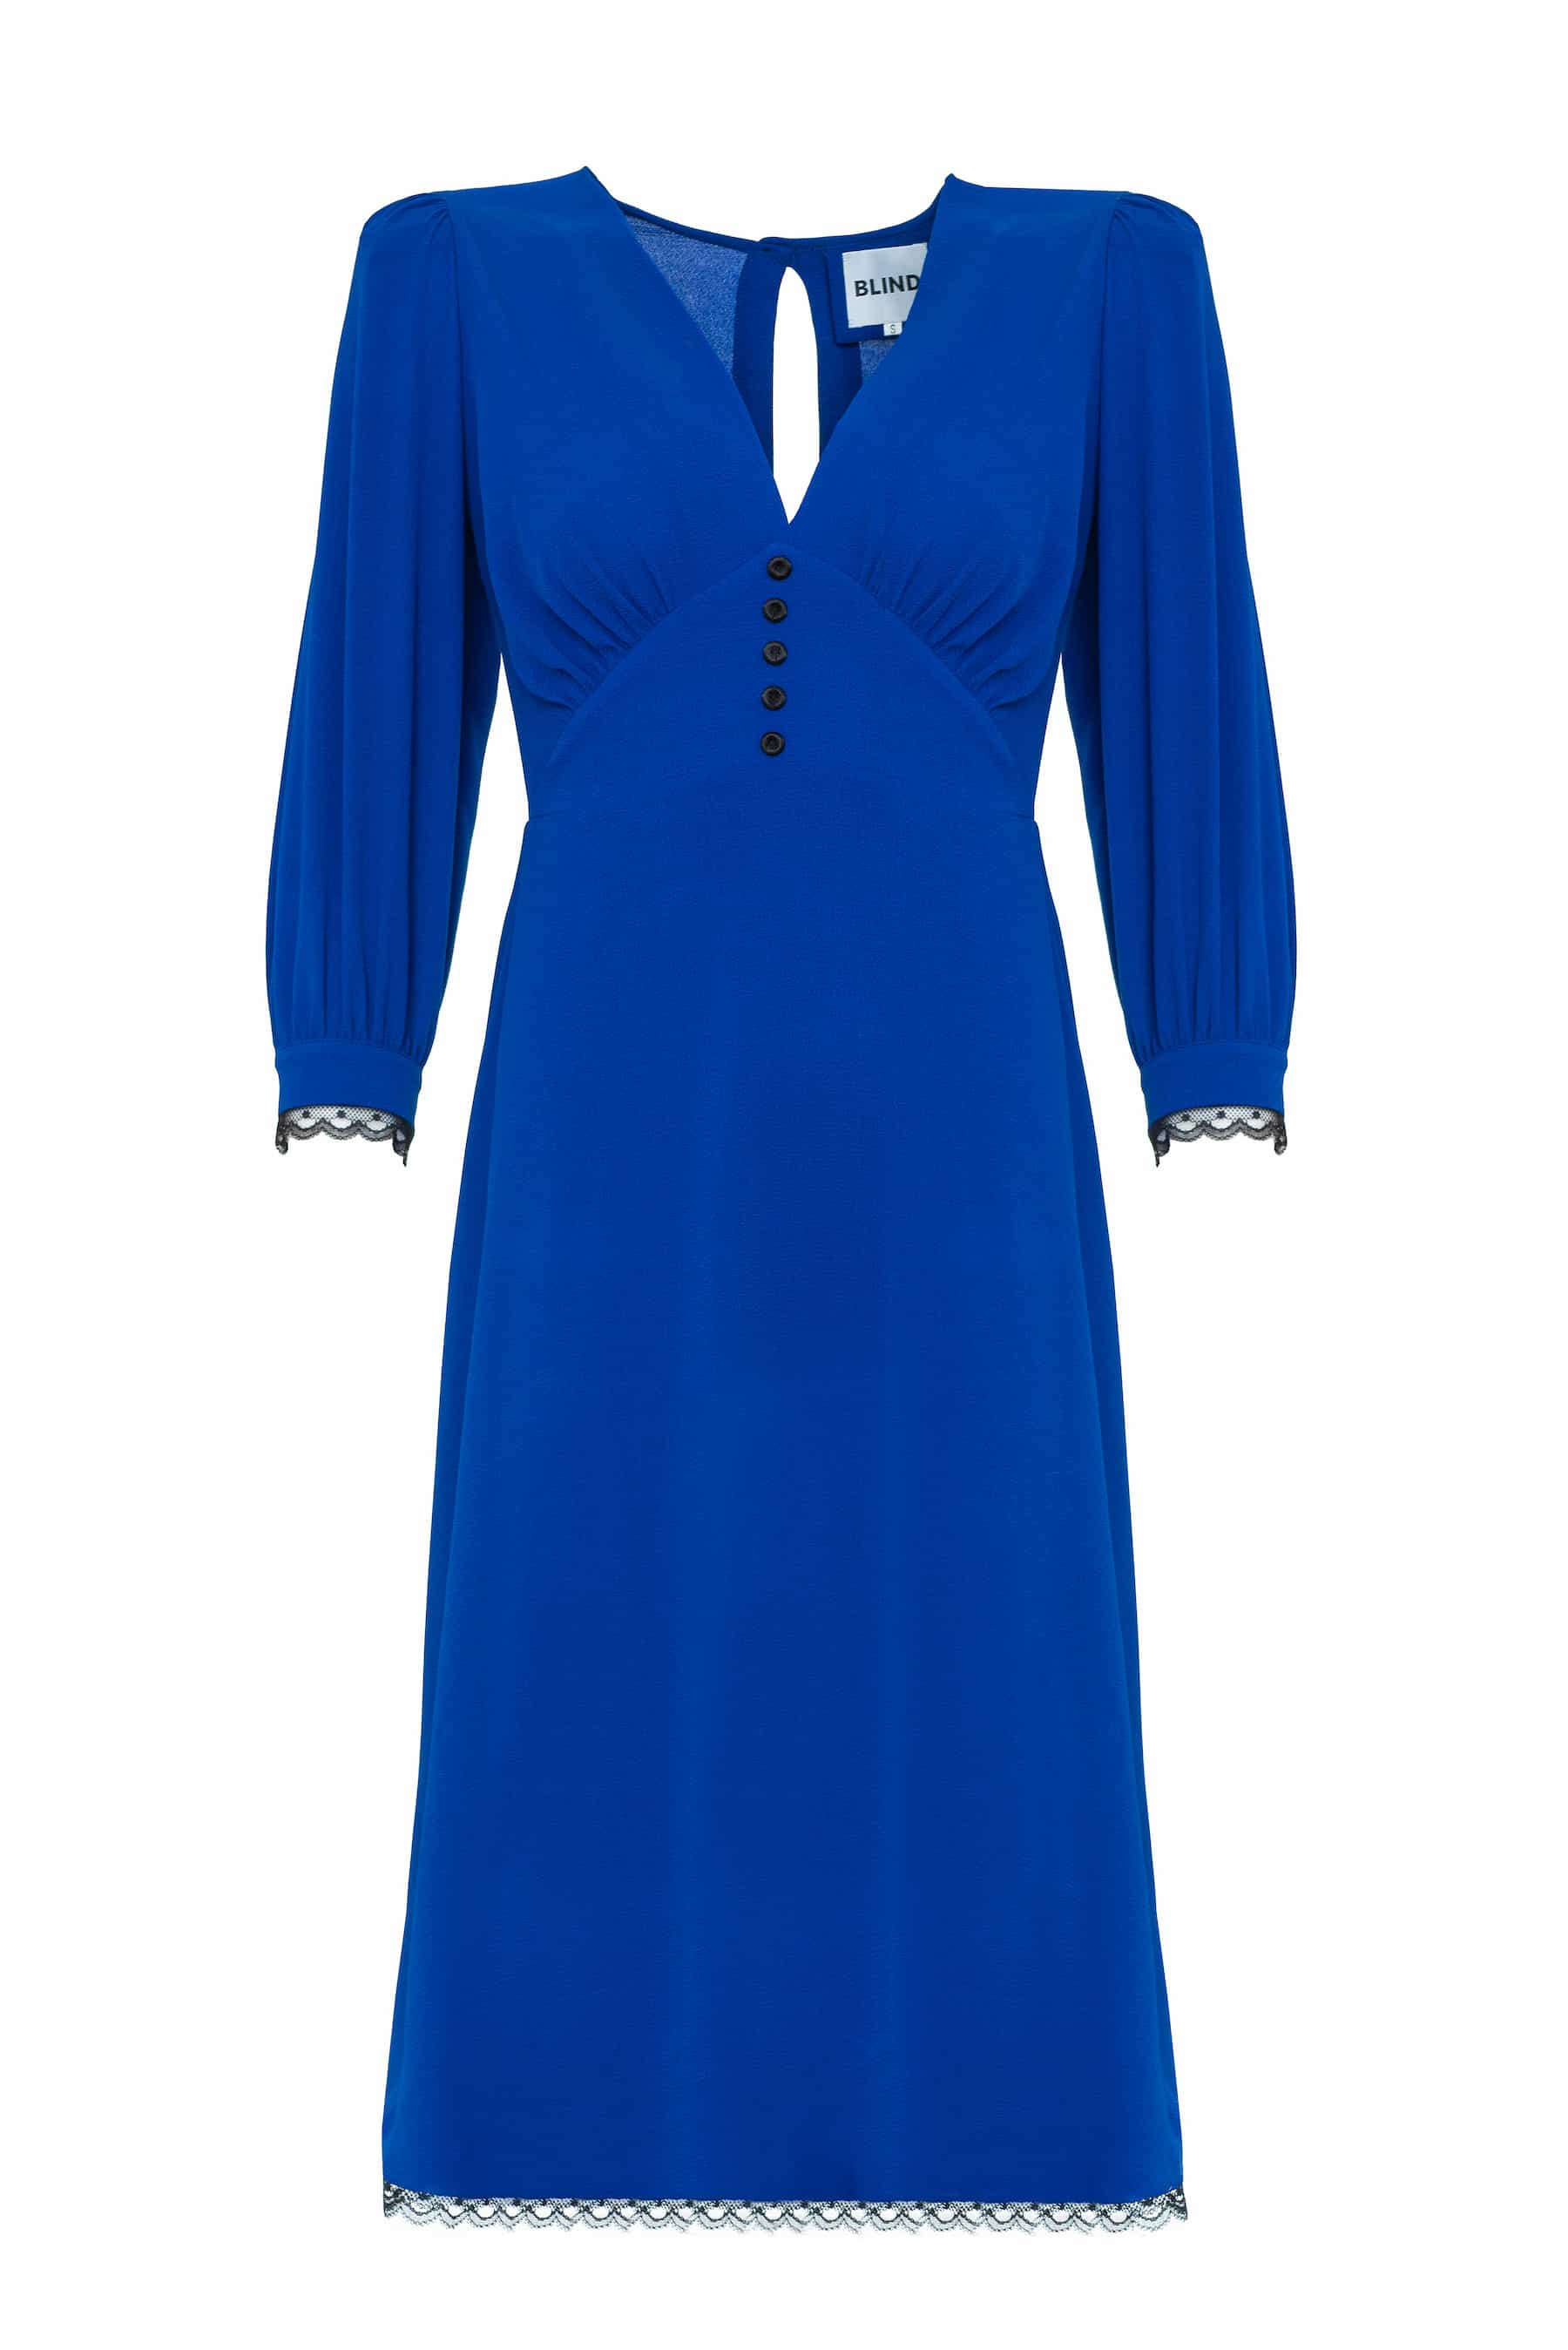 Яскраво-синя сукня з крепу з чорними гудзиками та мереживом